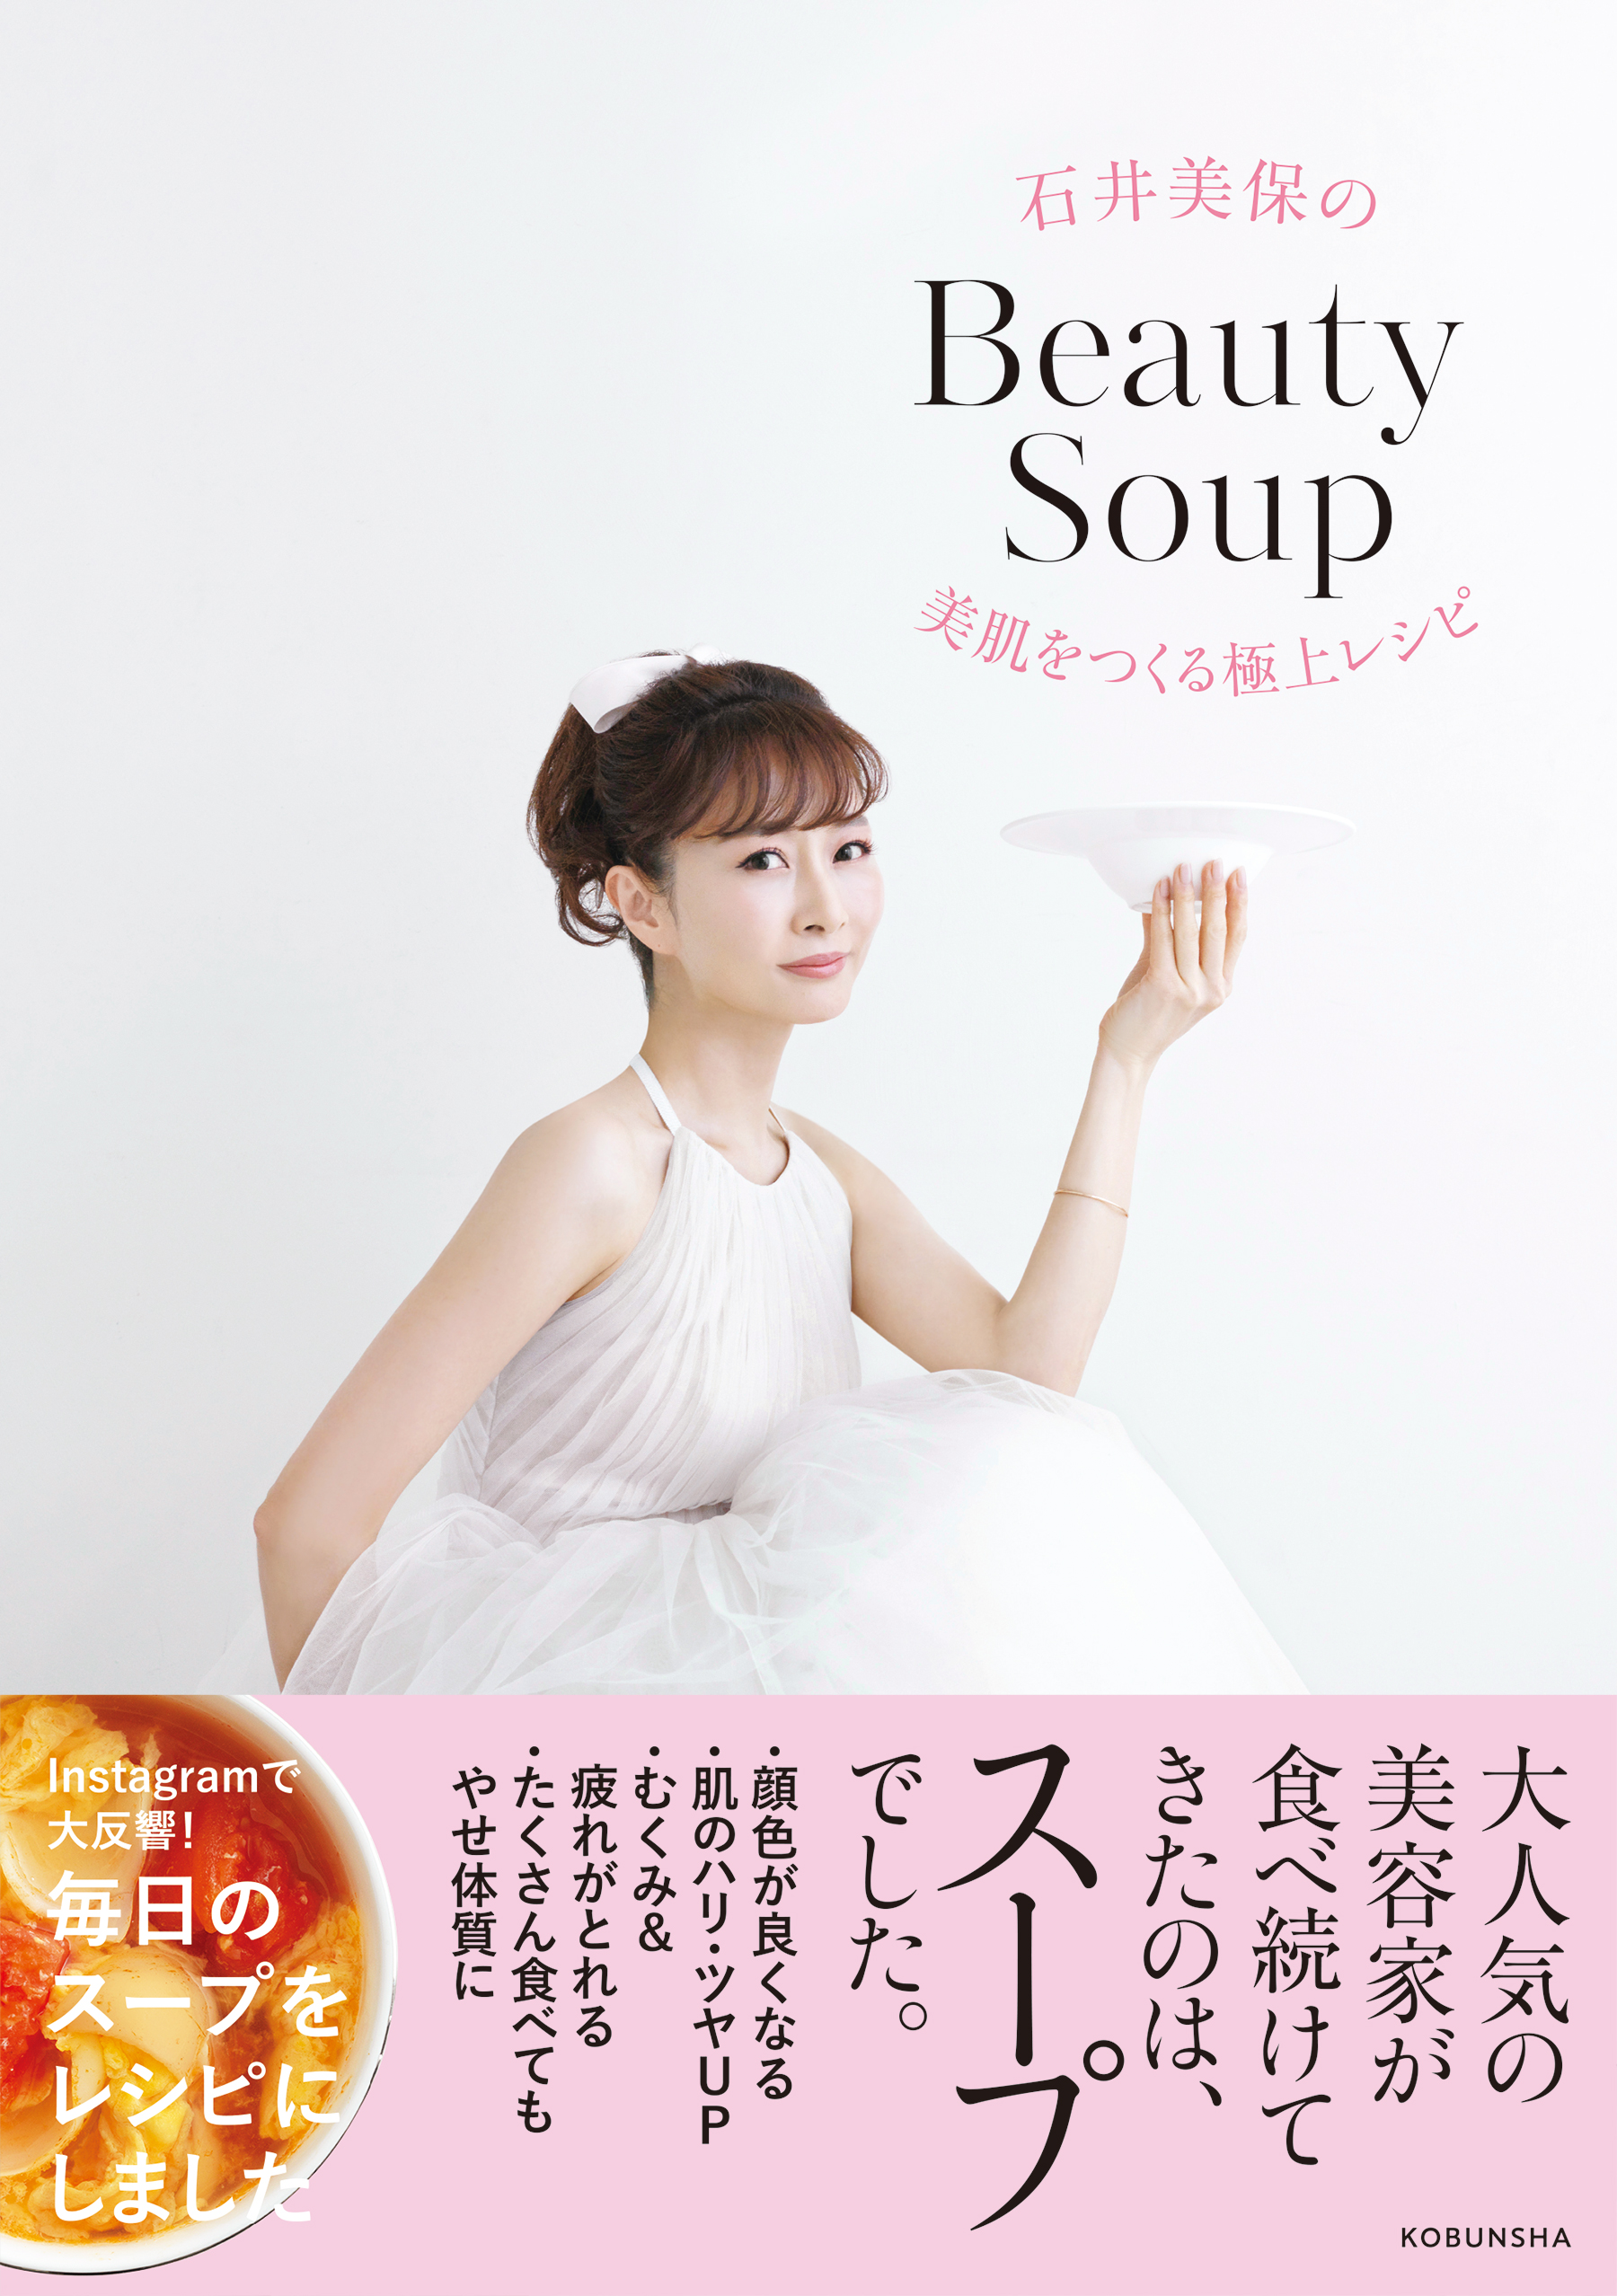 石井美保のBeauty Soup